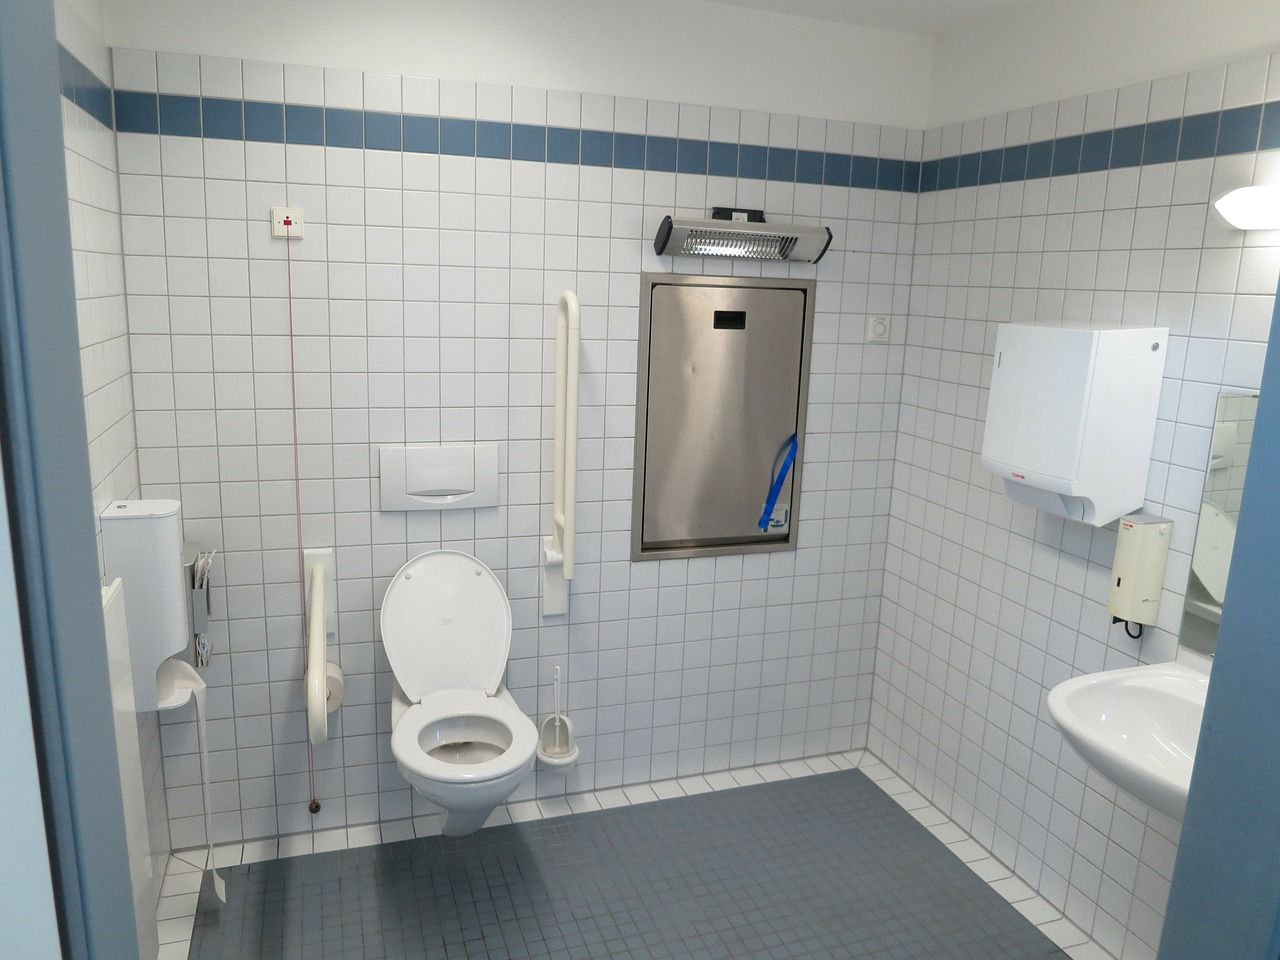 W co należy wyposażyć publiczną toaletę?